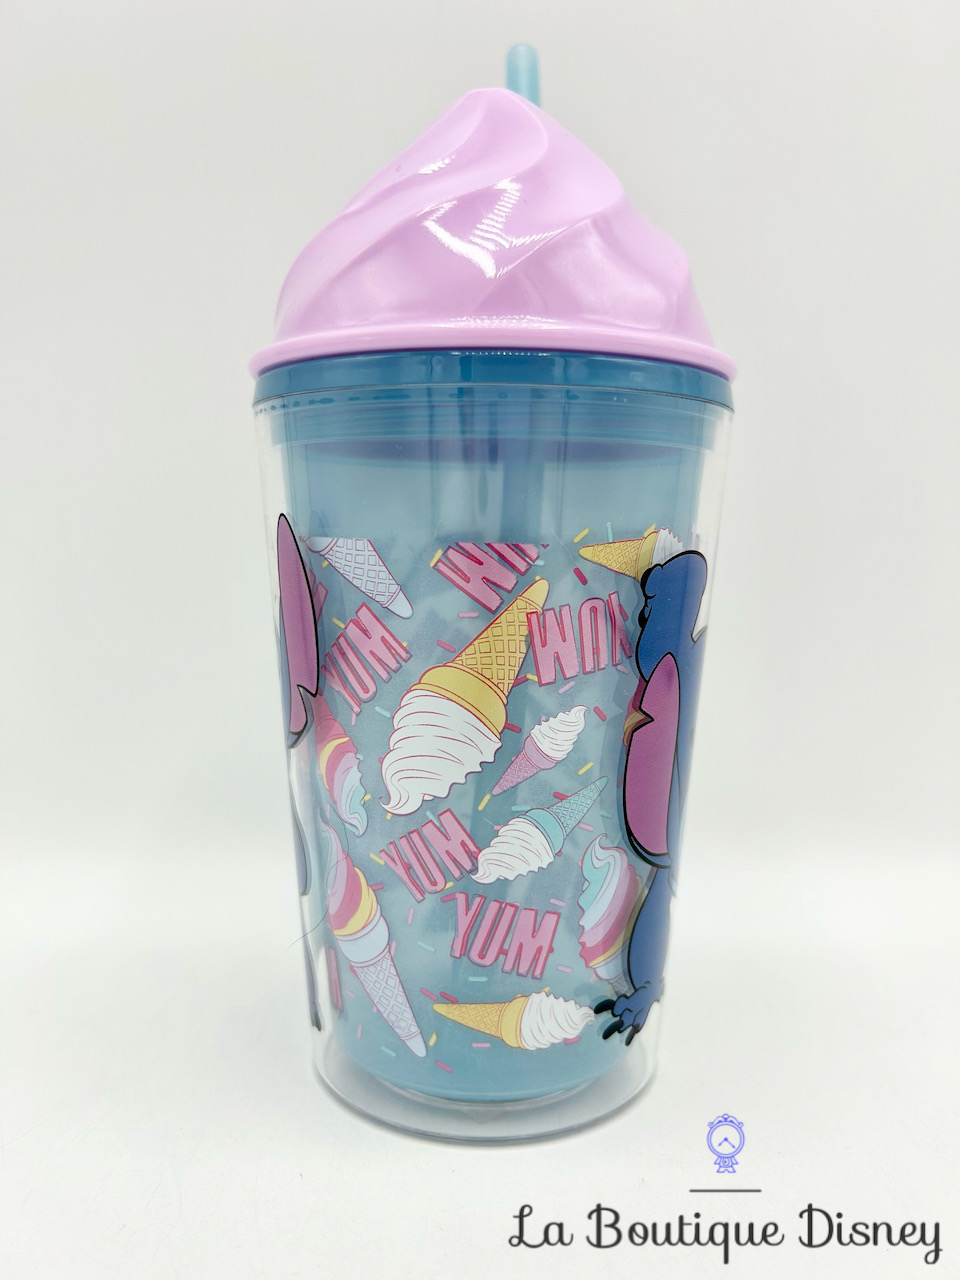 Gobelet paille Stitch Glace Disney Store 2017 verre plastique bleu rose